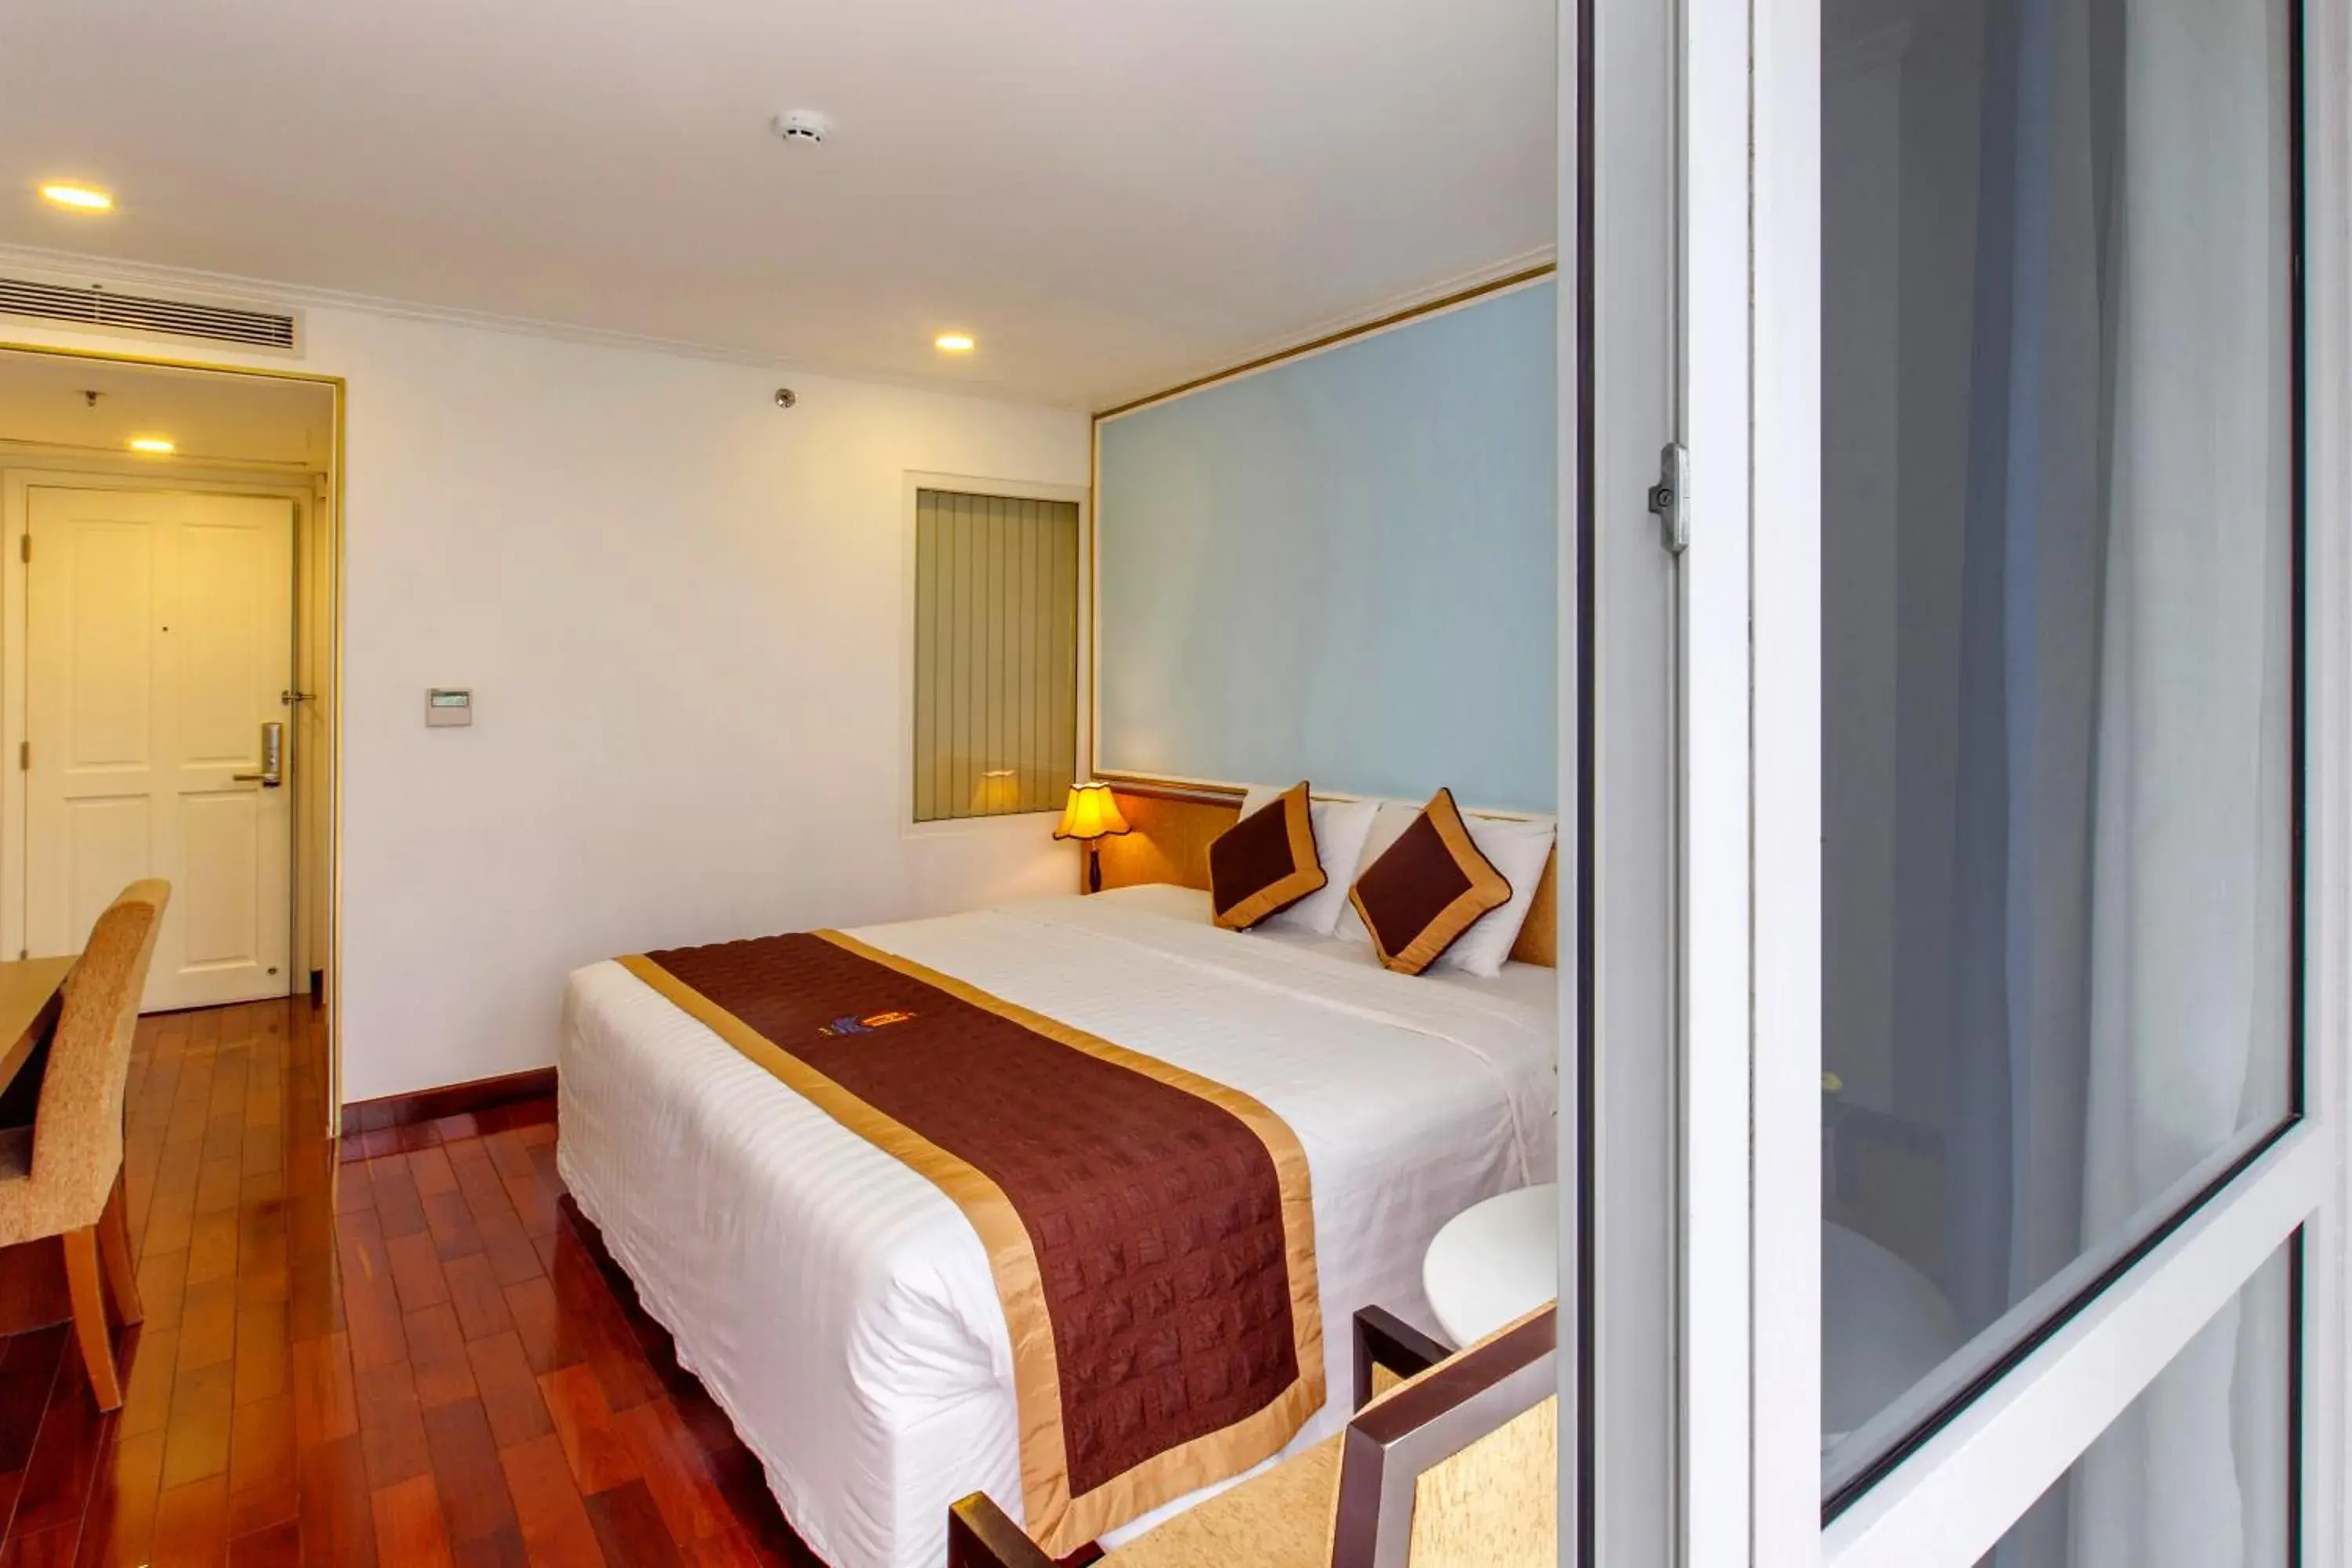 Bed in Huong Sen Annex Hotel